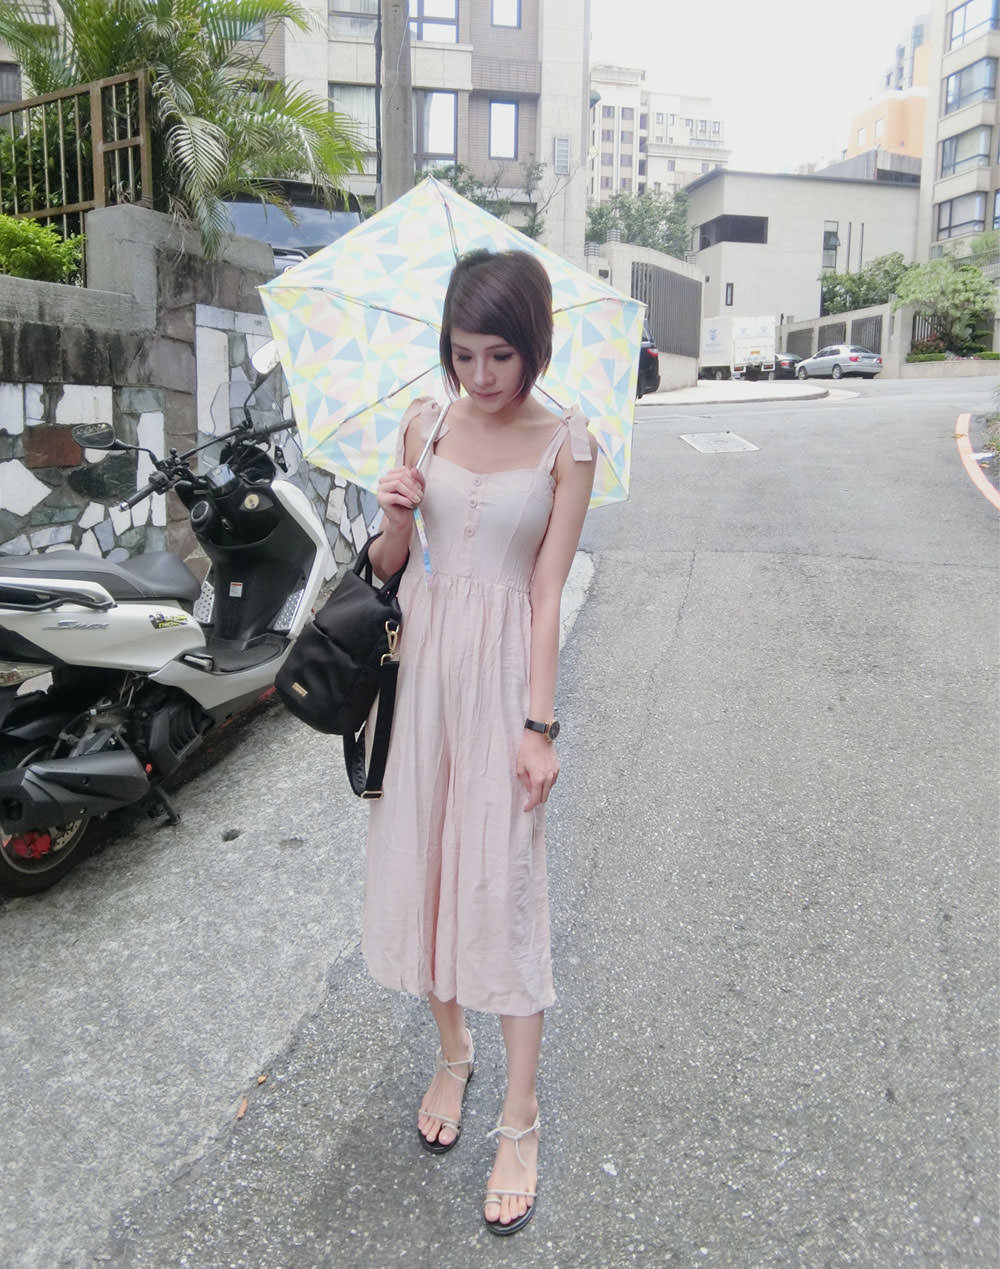 [雨具] 日本KIU下雨天出門也要輕便又時尚,讓雨具讓外出大加分-雨傘/雨衣/雨鞋